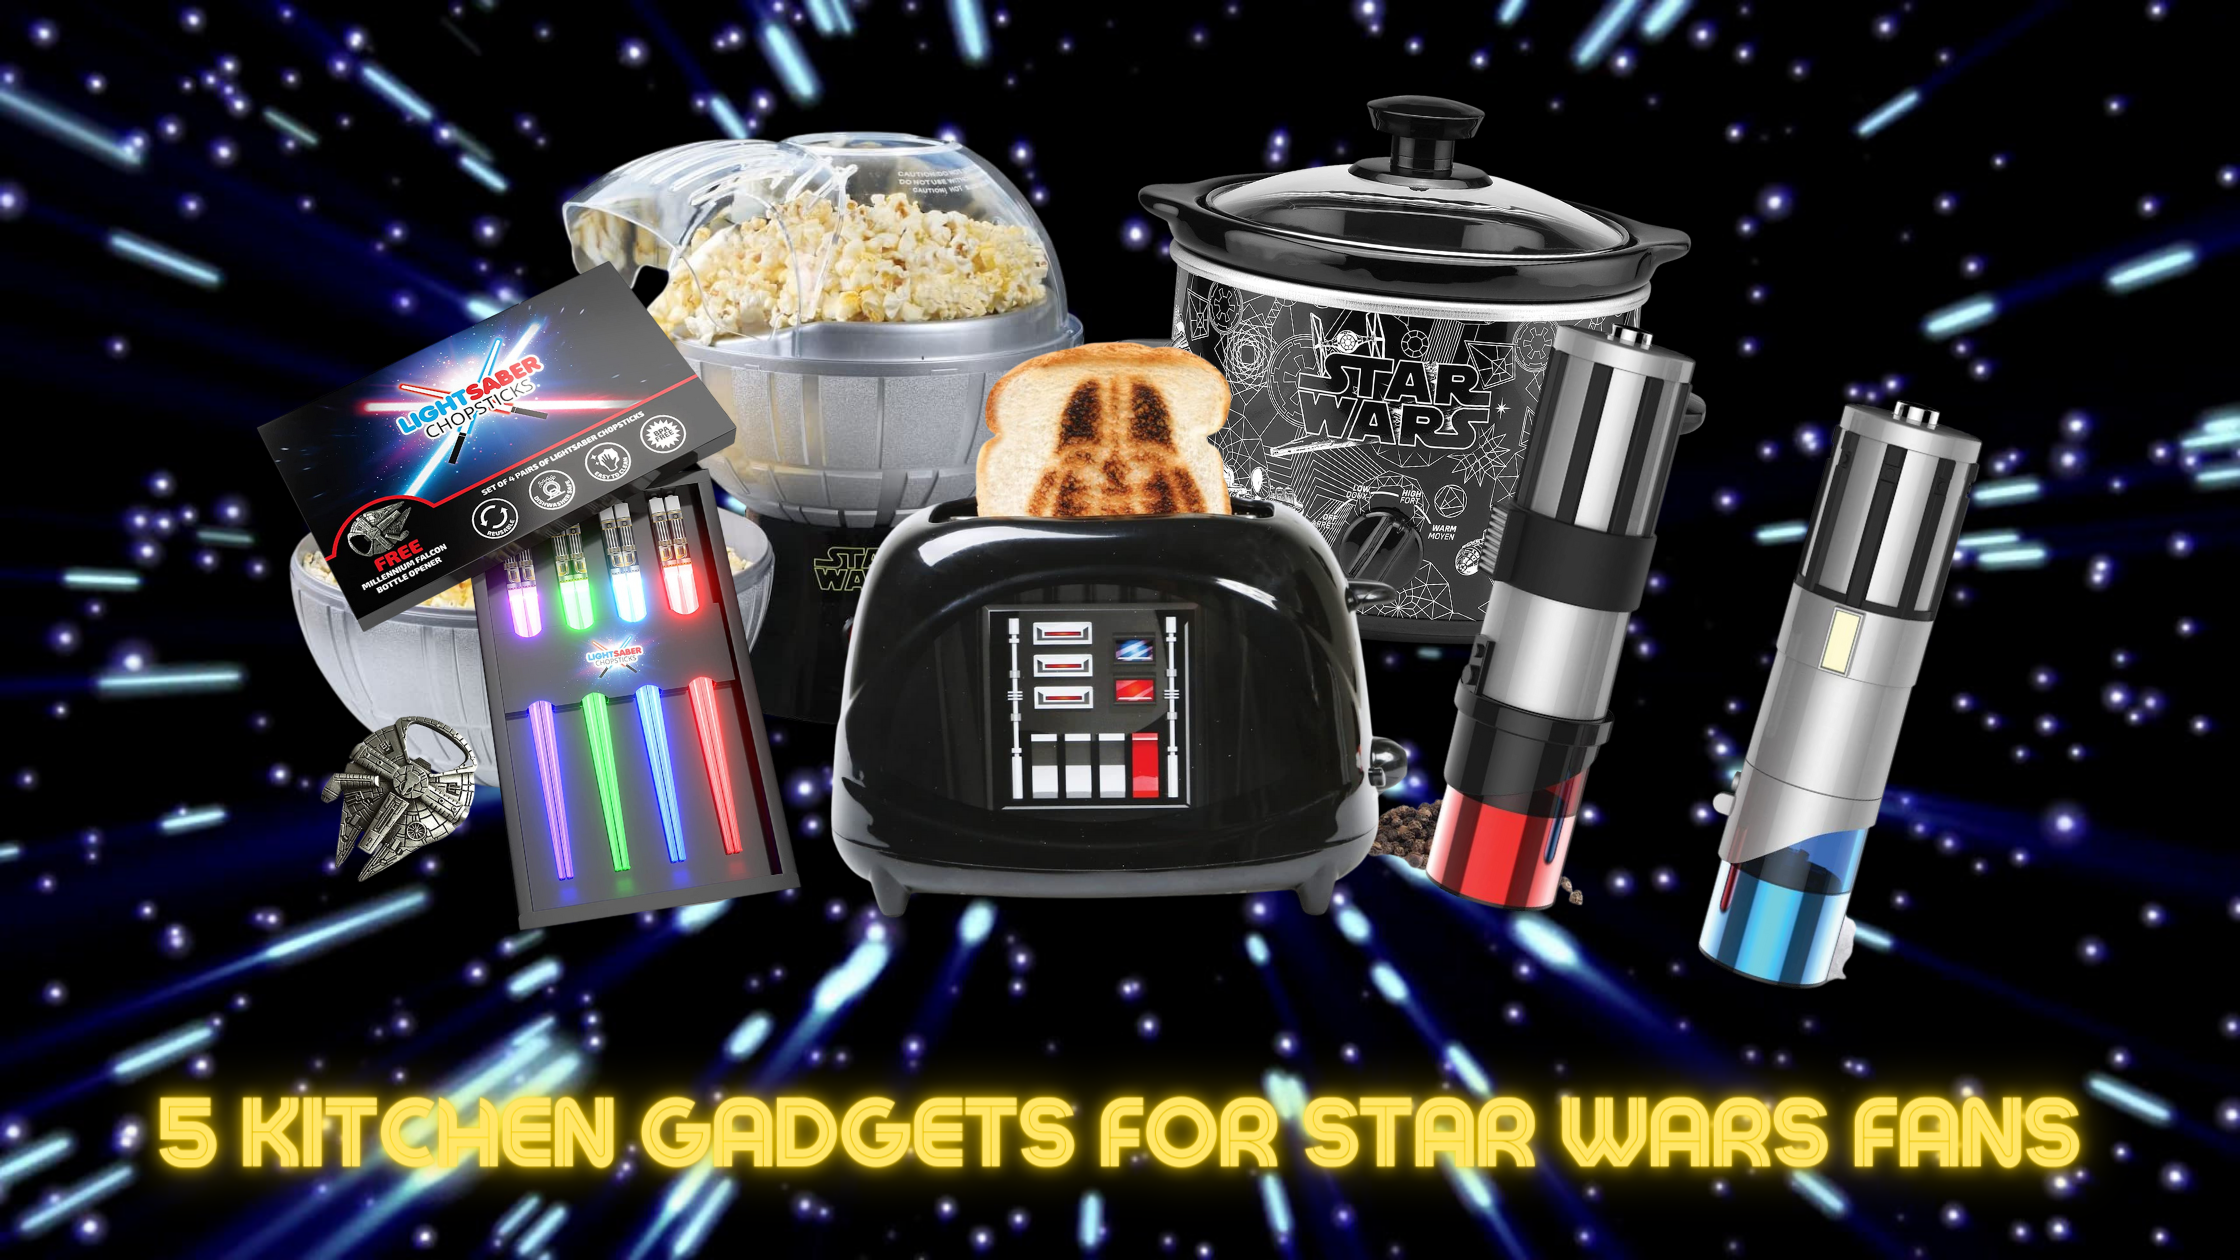 Star Wars Kitchen Gifts